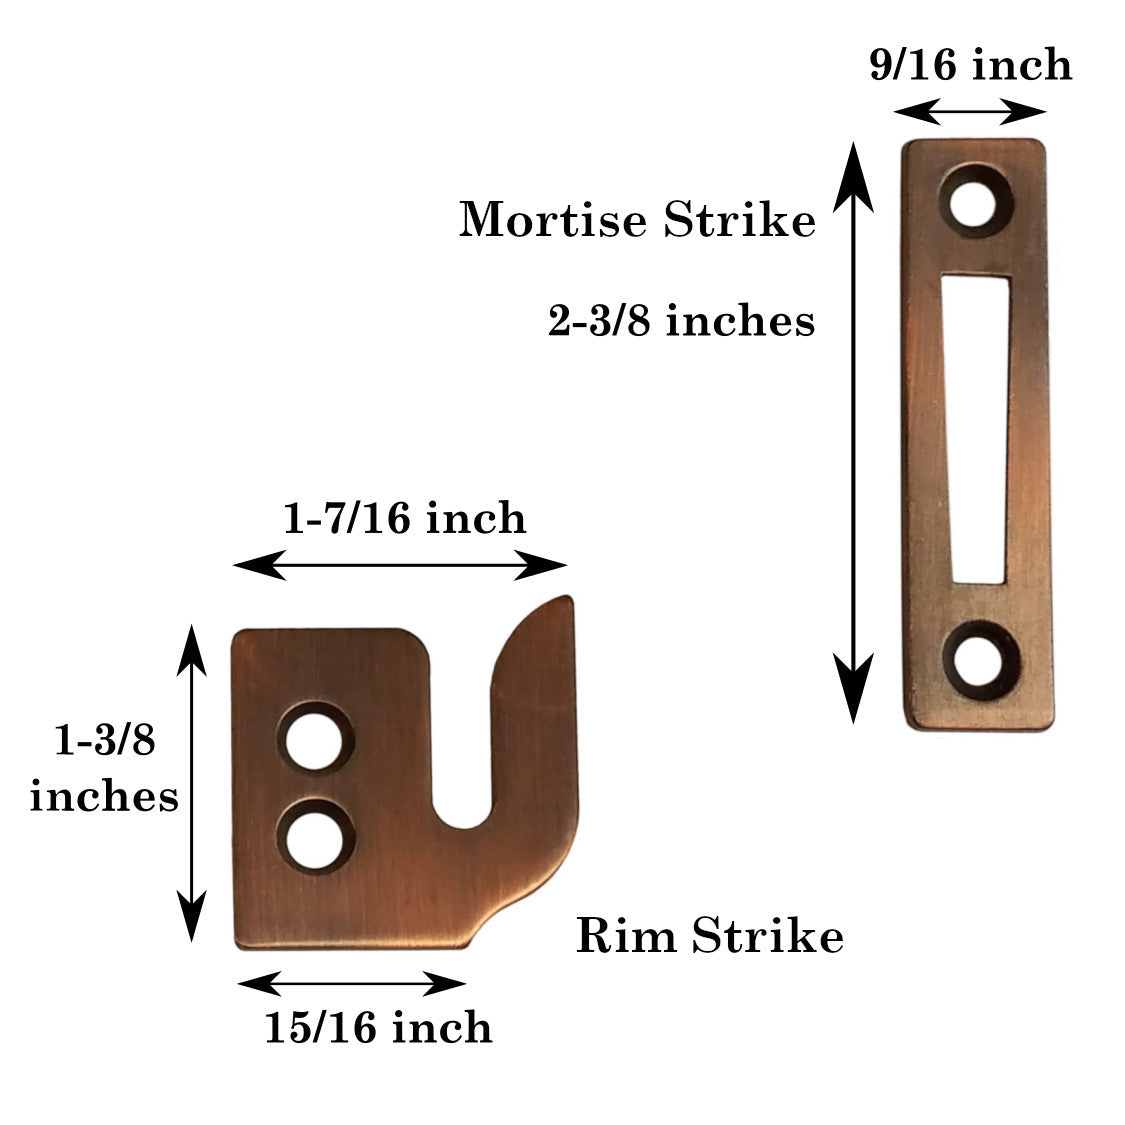 Warwick Window Lock, Casement Fastener with 3 Strikes, Bronze BH2014BZ